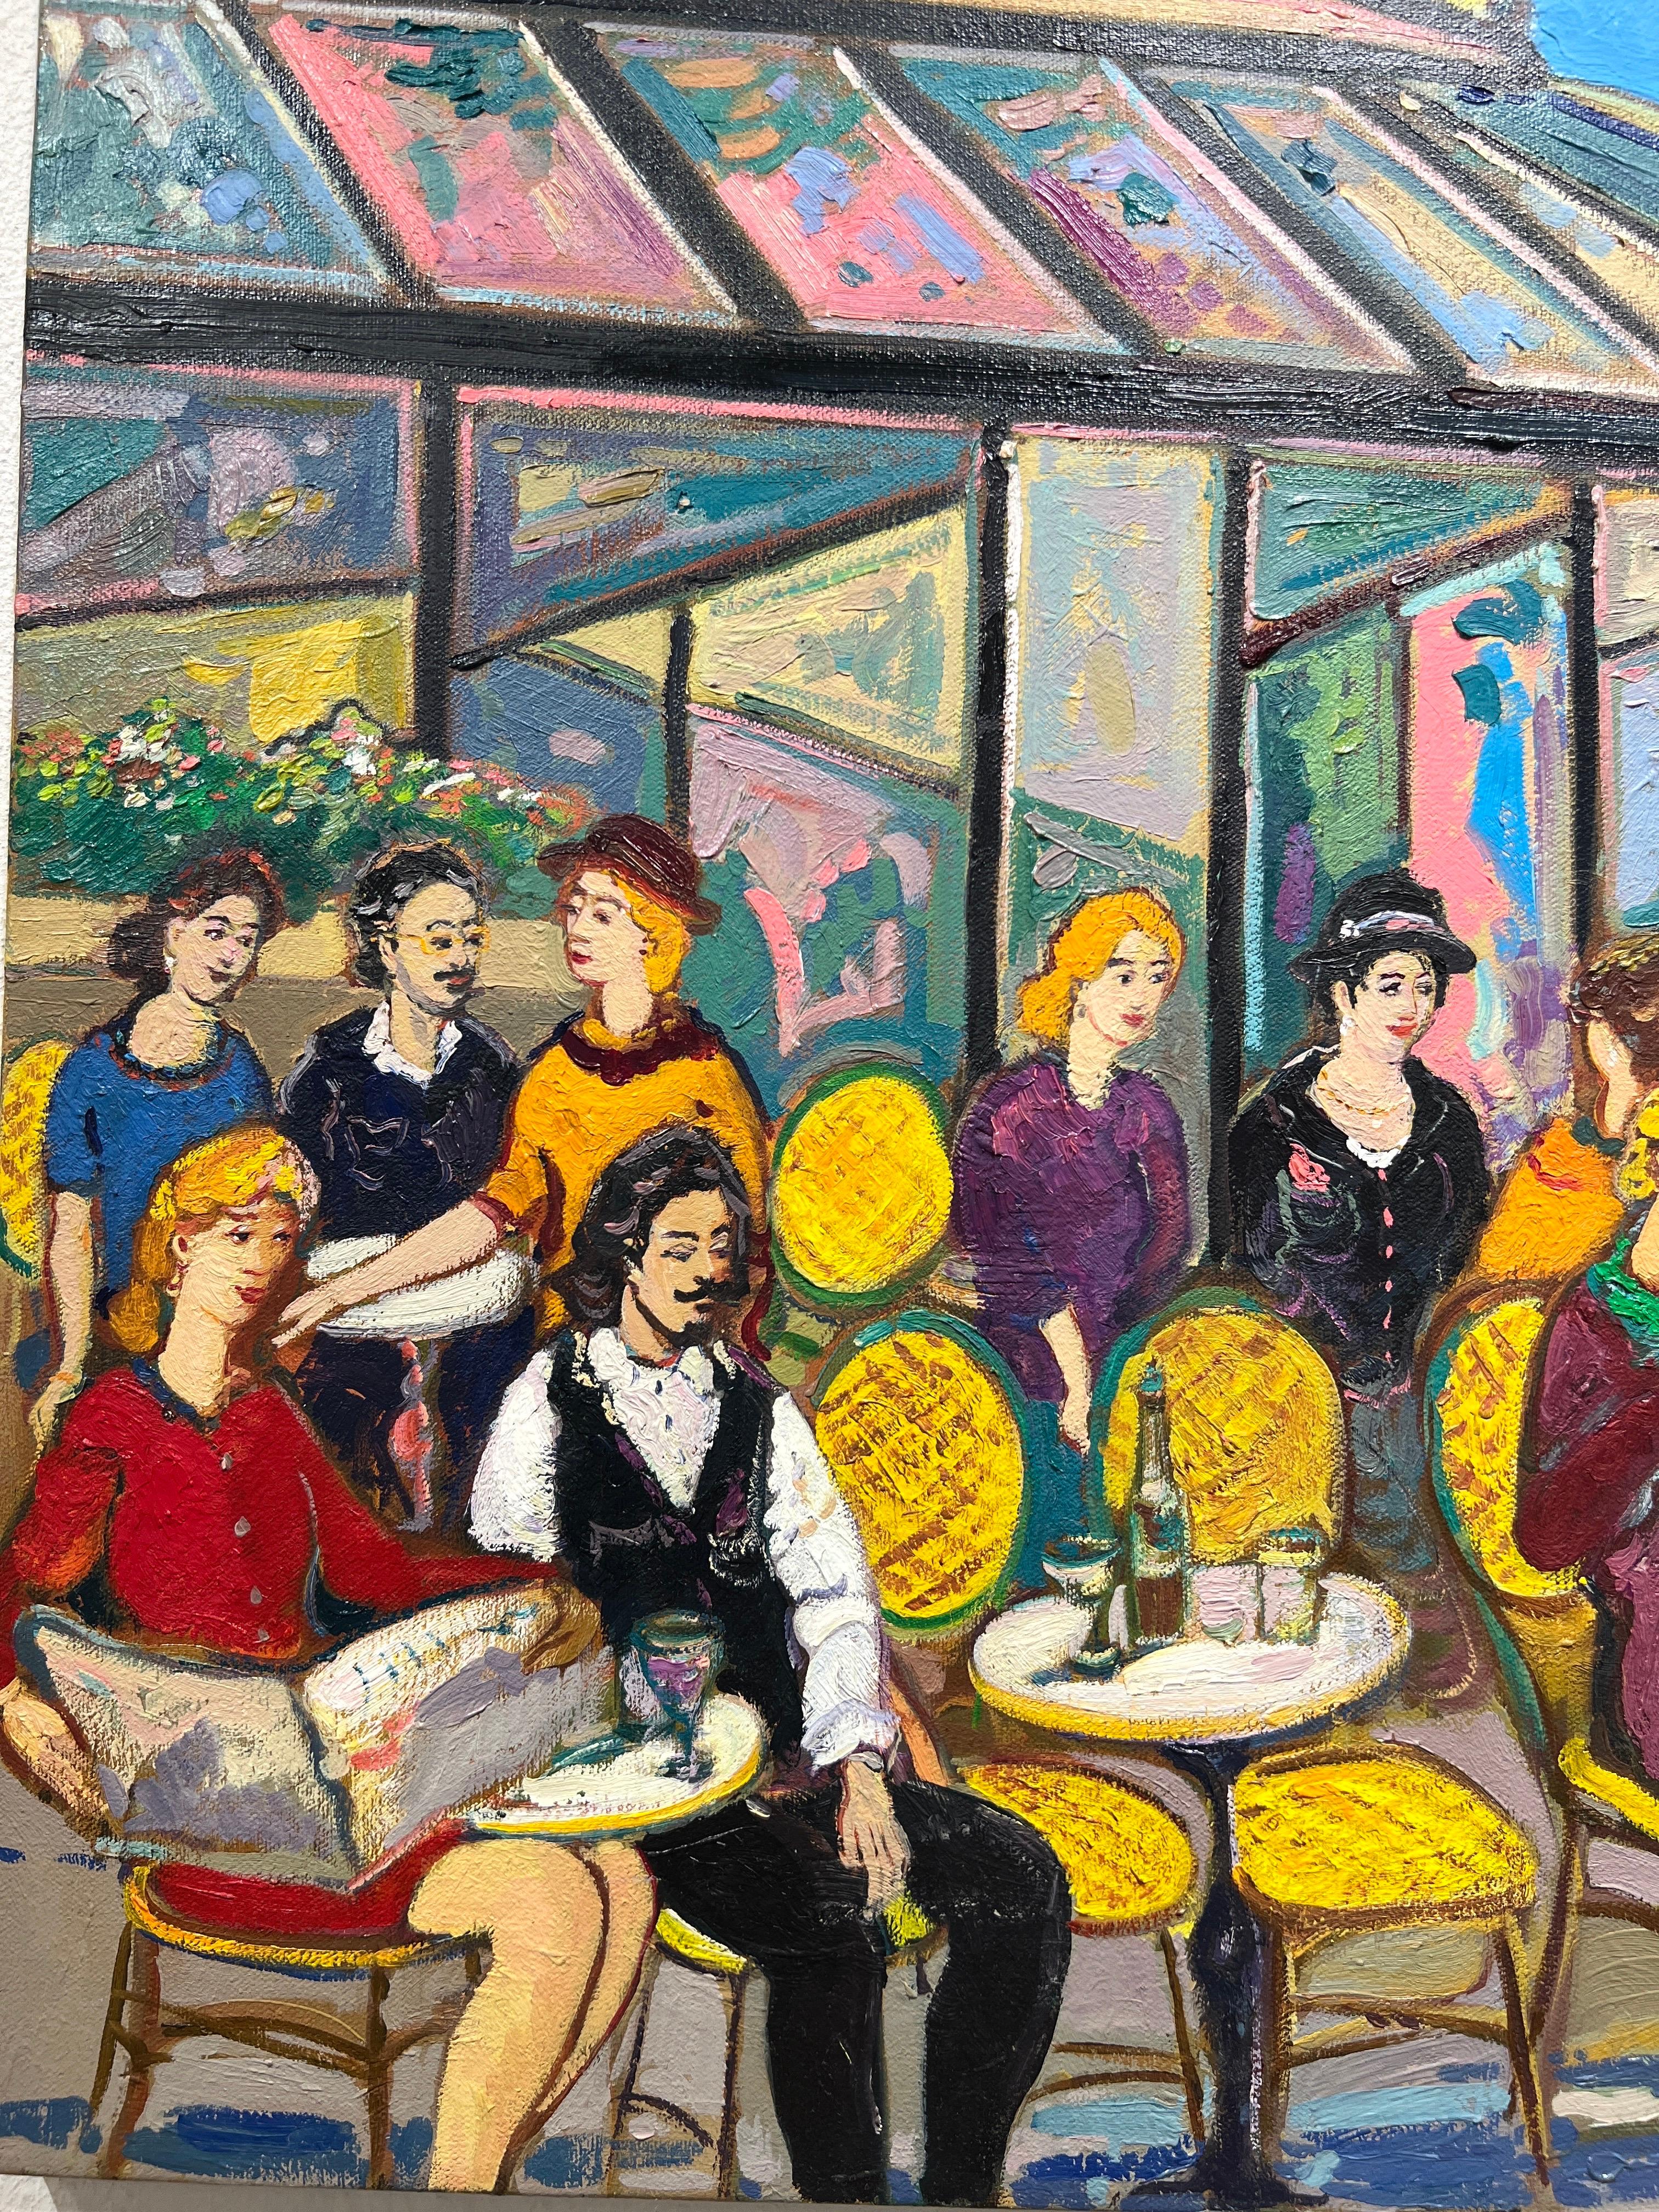 Areg Elibekian ist für seinen lebendigen und einzigartigen Stil bekannt, in dem er oft Szenen mit lebhaften Farben und ausdrucksstarken Pinselstrichen festhält. Das Les Deux Magots in Paris ist ein berühmtes Café, das aufgrund seiner historischen